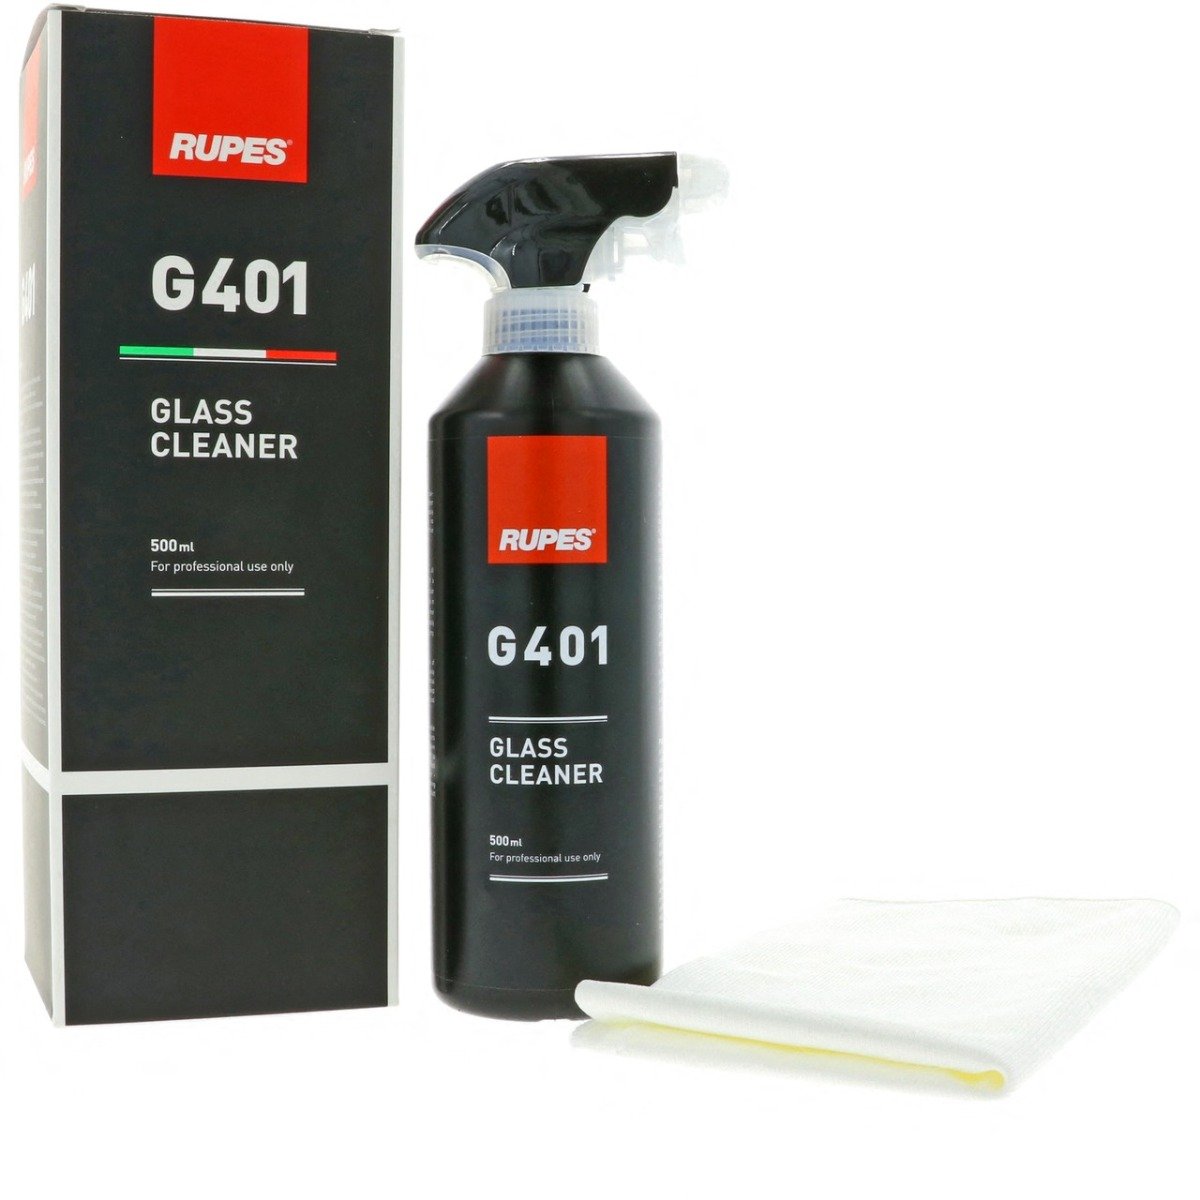 G401 Glass Cleaner met microvezeldoek - 500ml